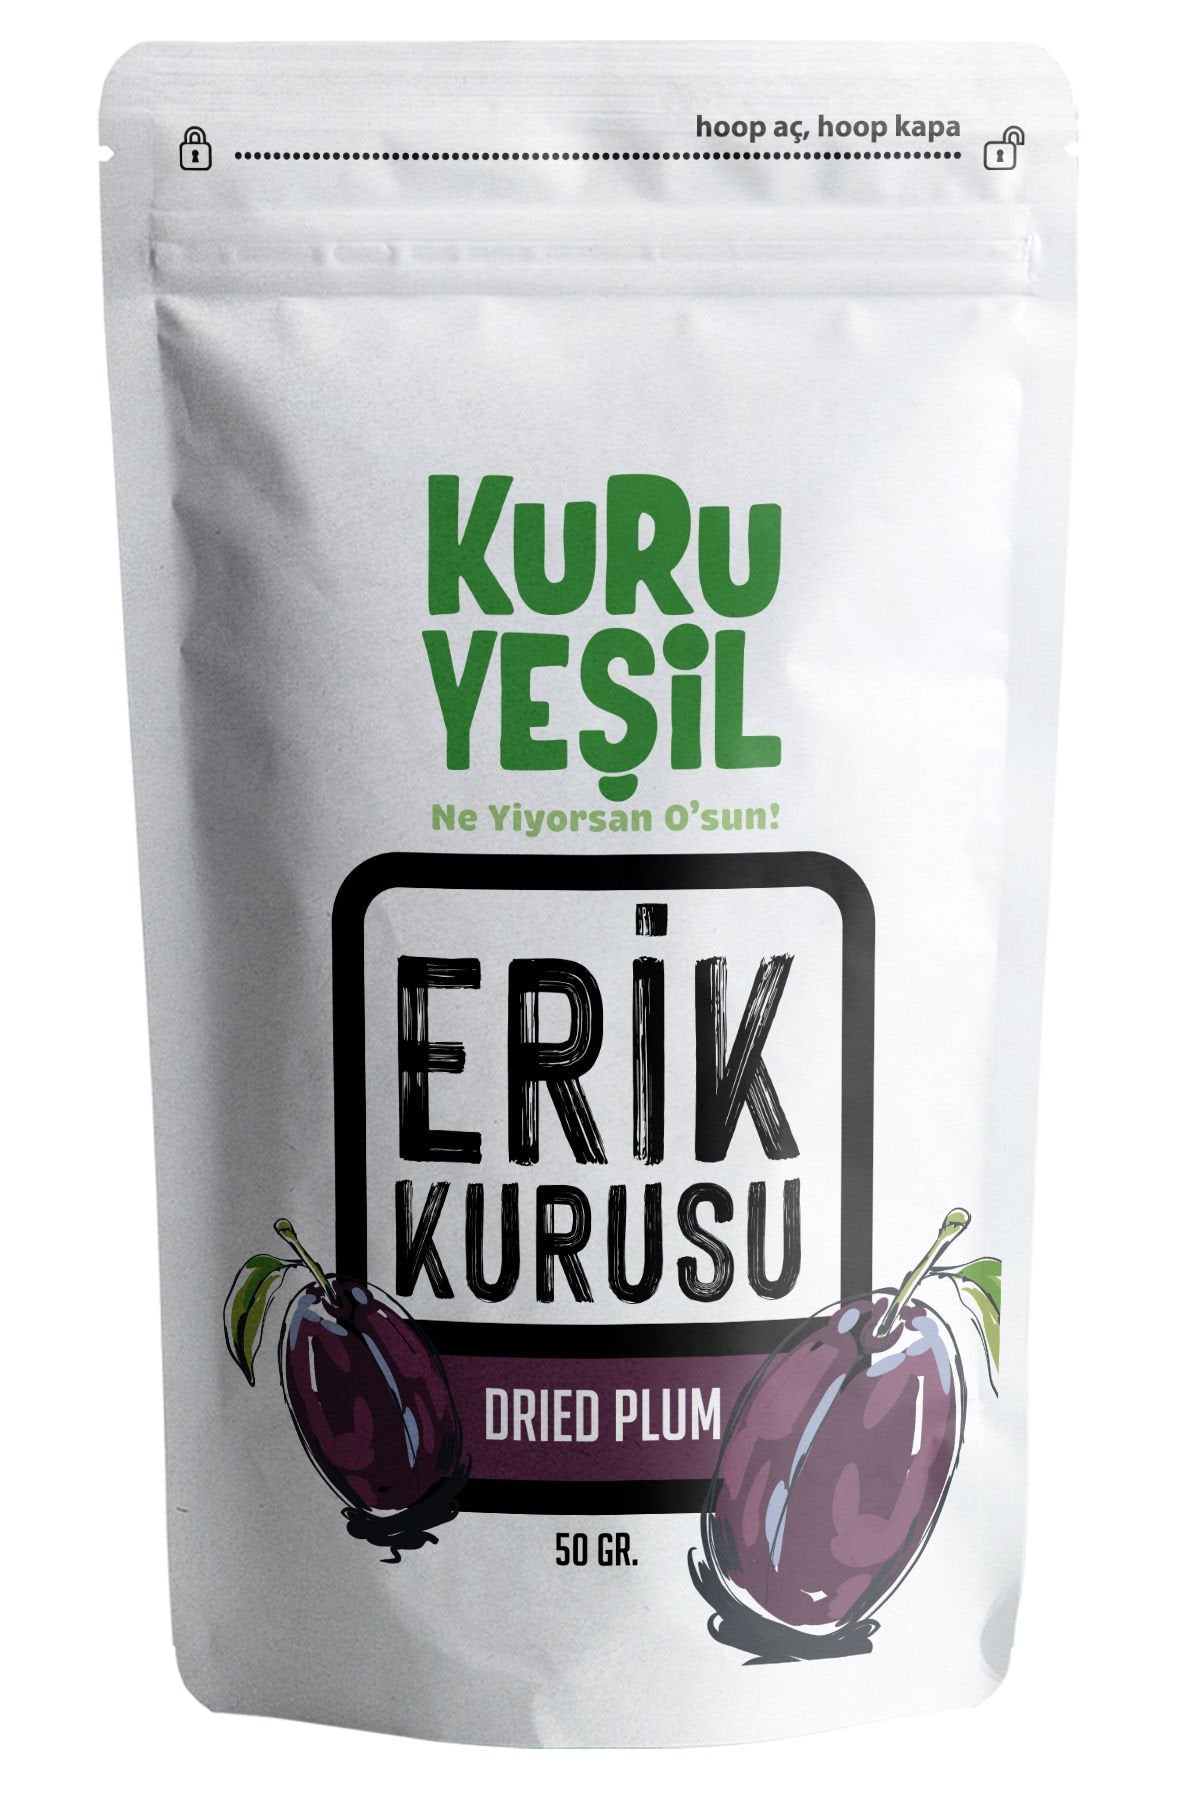 kuru yeşil dried plum 50g 1